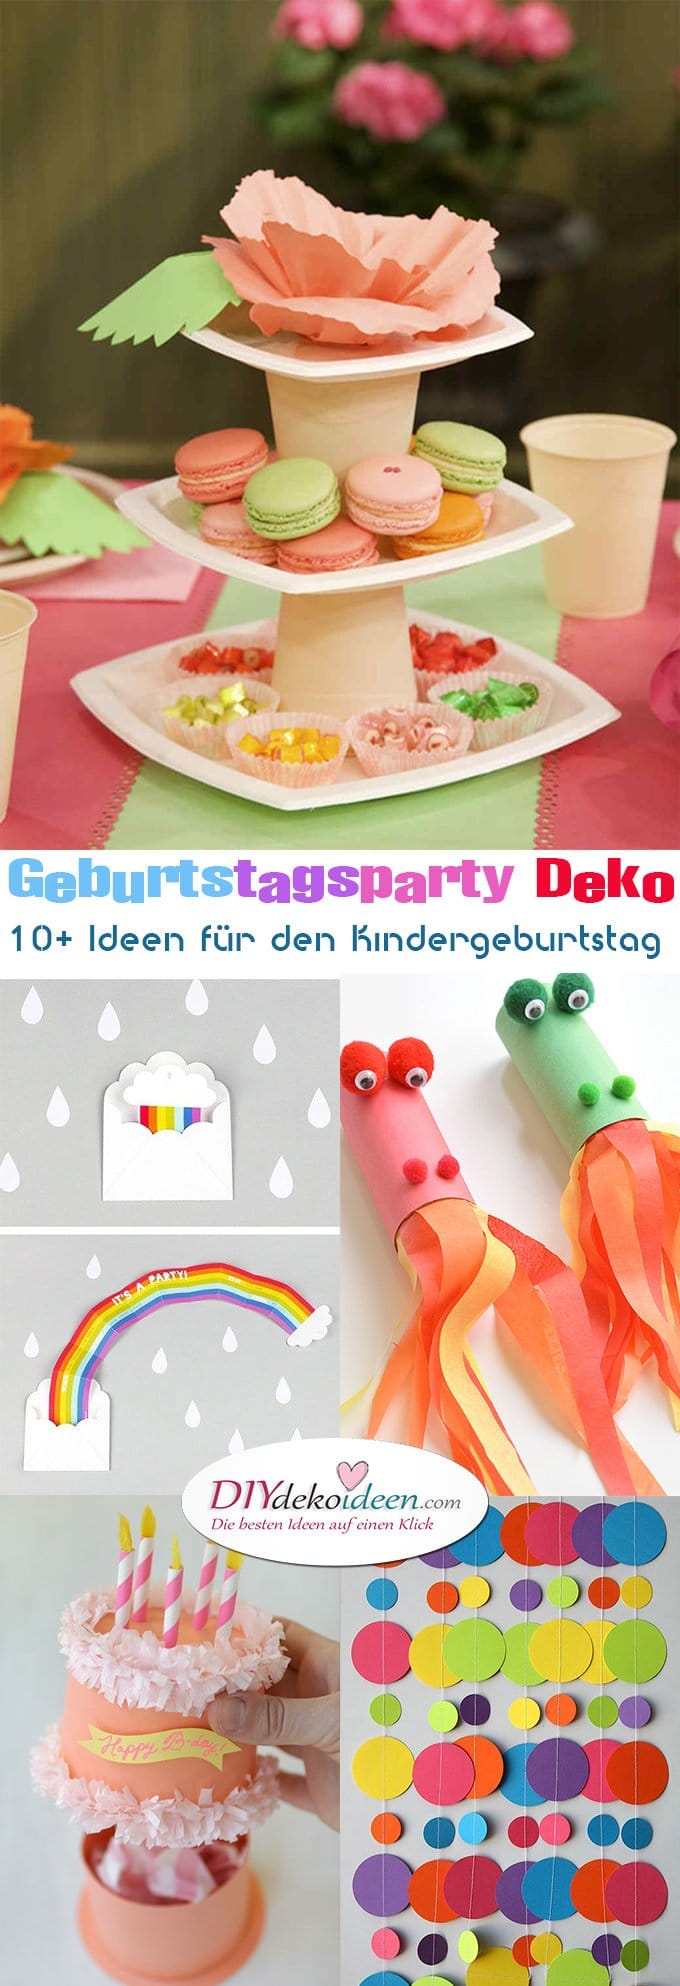 Geburtstagsparty DIY Deko - Kindergeburtstag -10+ Ideen Bastelideen Kinderparty Deko